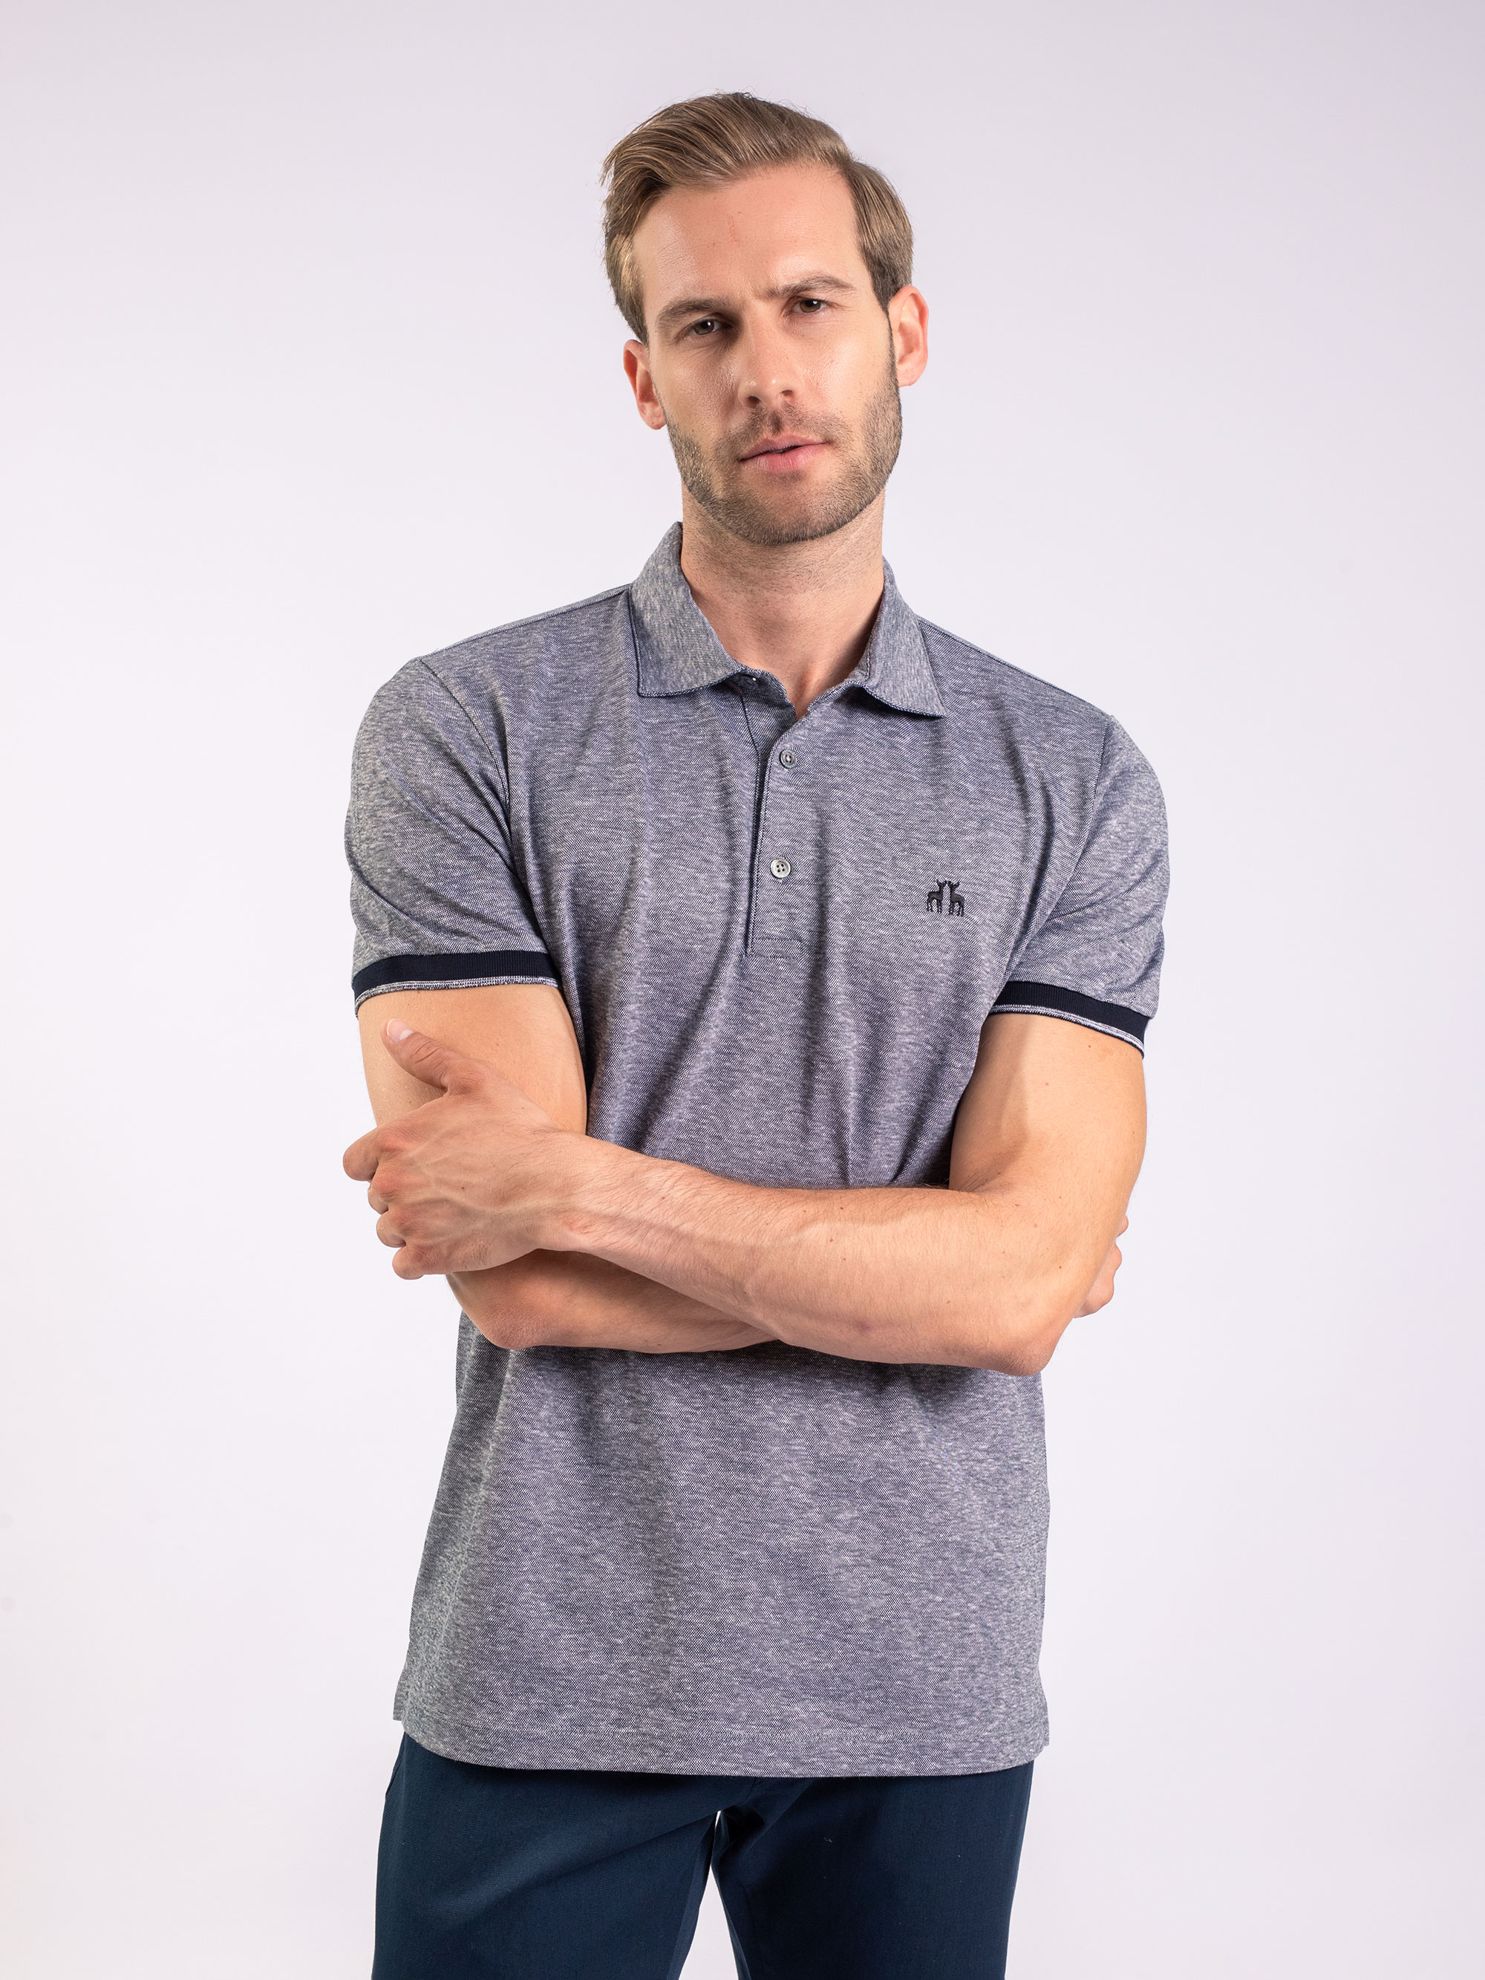 Karaca Erkek Slim Fit Polo Yaka Tişört-Gri. ürün görseli